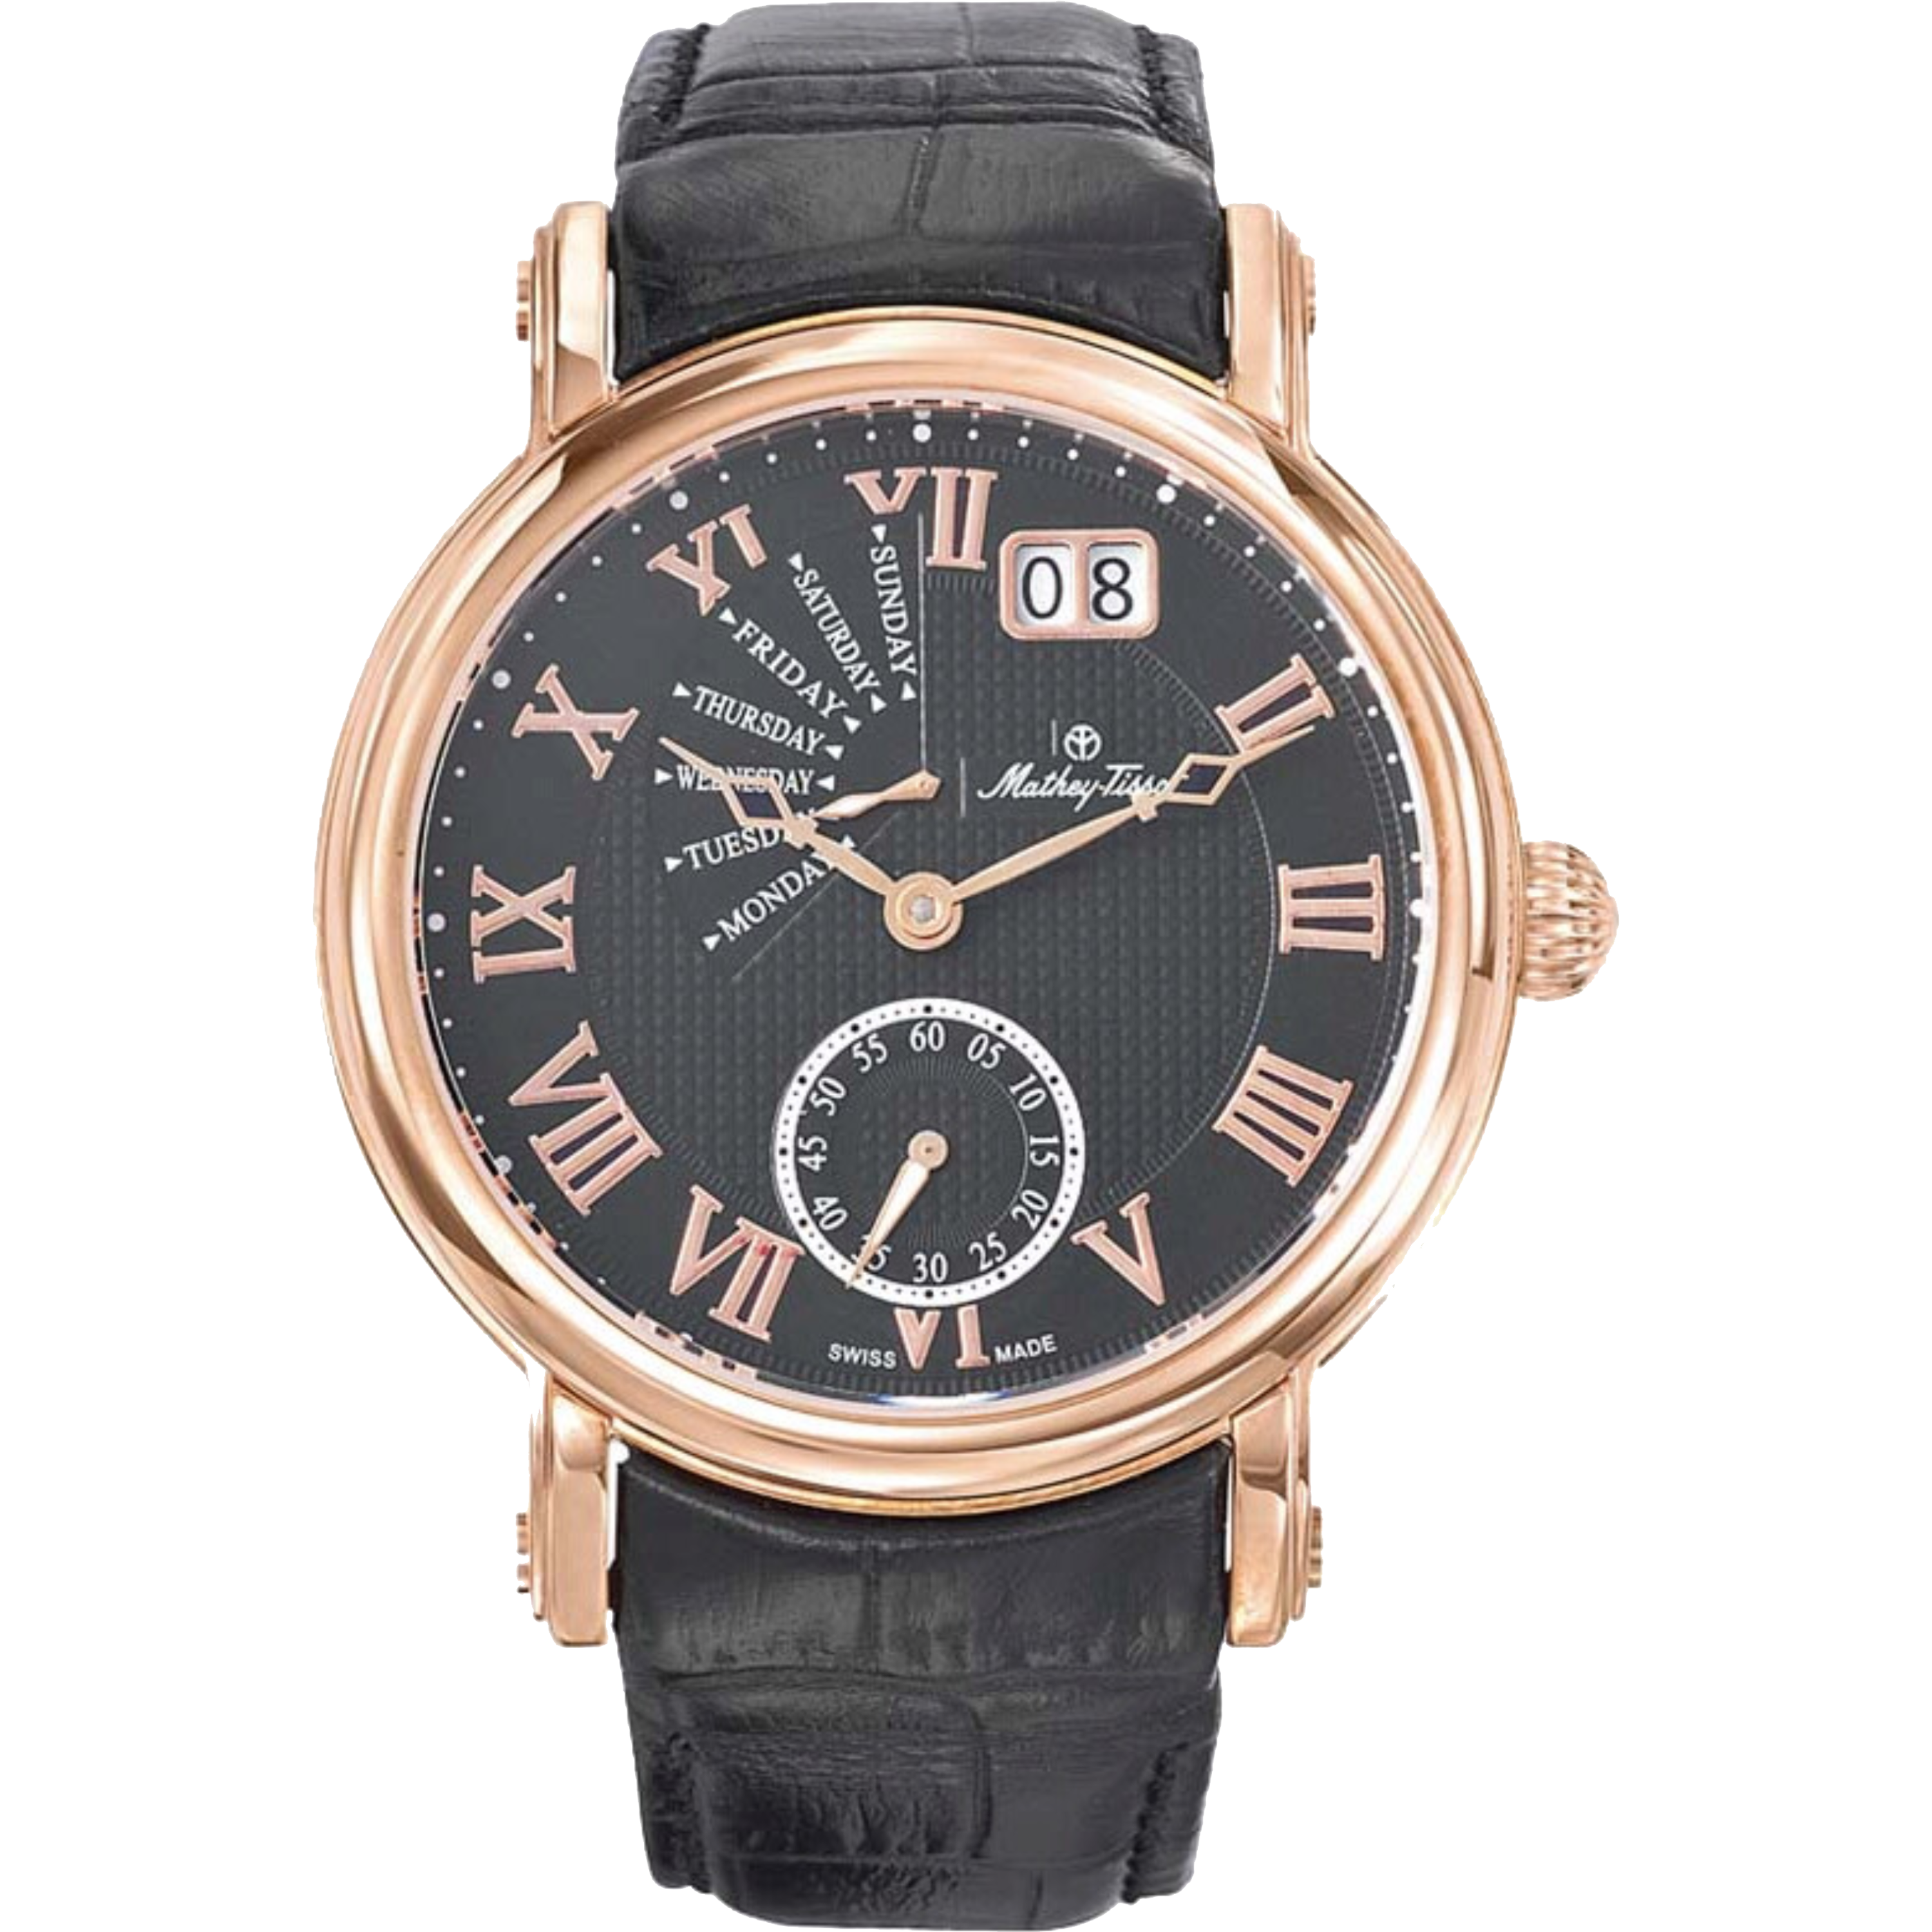 שעון יד לגבר Mathey Tissot H7020PN 43mm צבע שחור/רוזגולד/עור שחור/זכוכית ספיר - אחריות לשנתיים